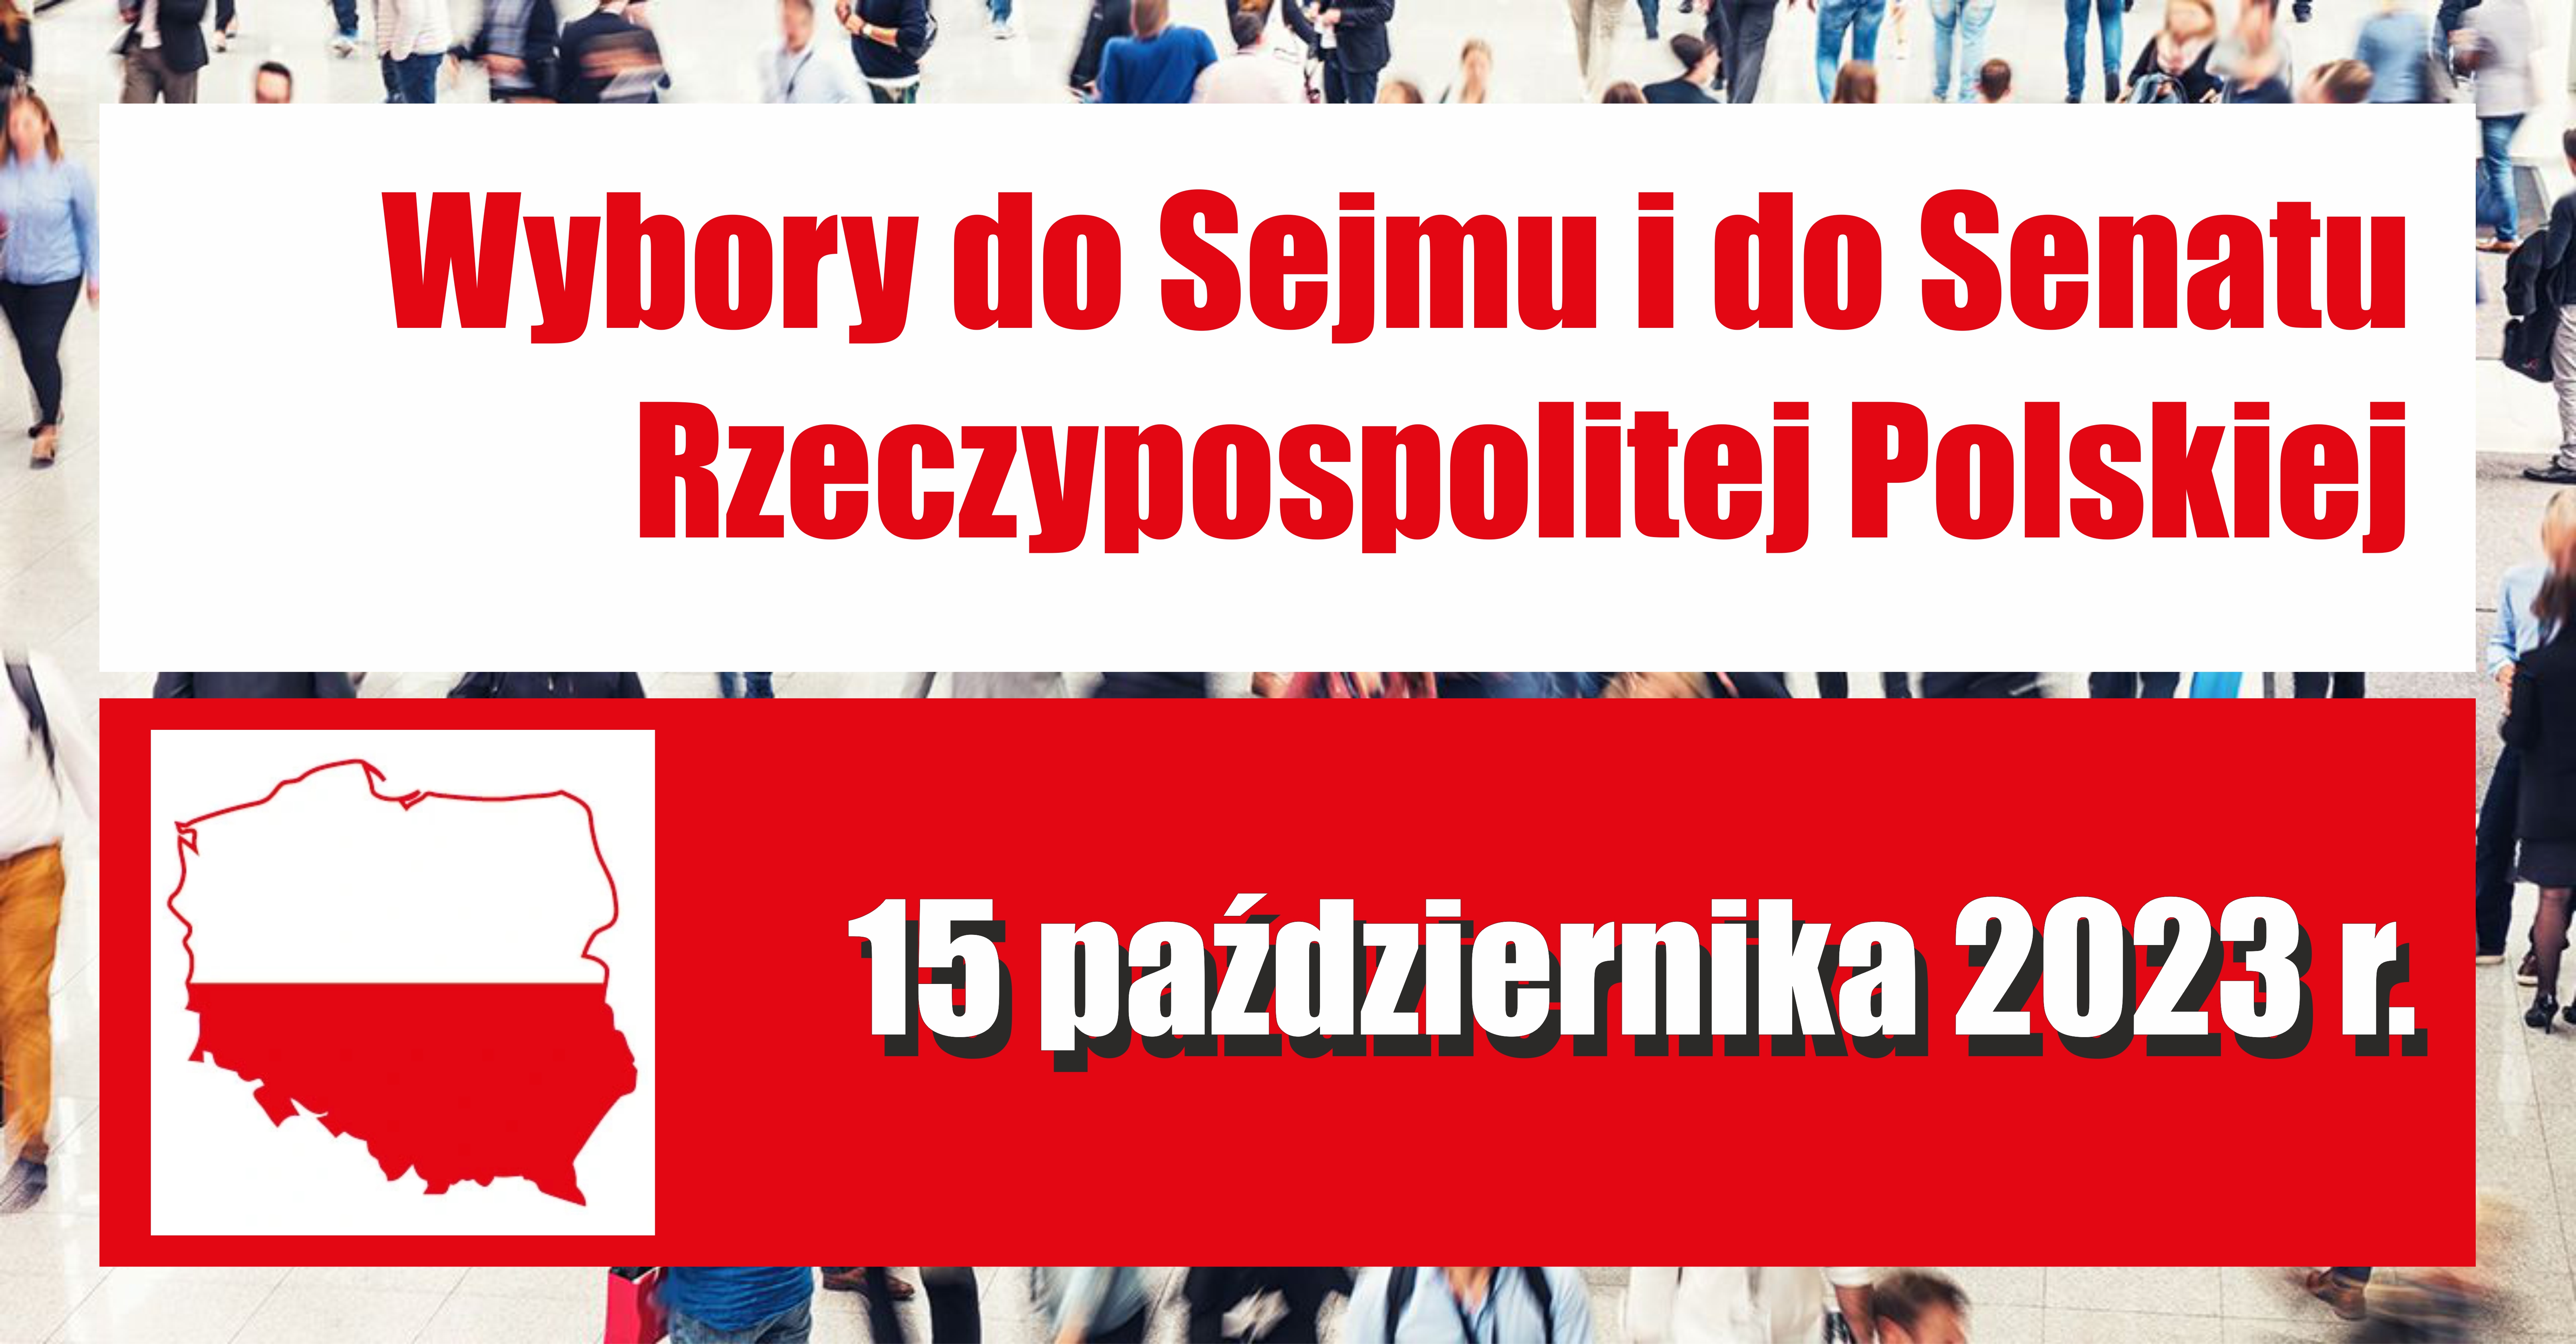 Wybory do Sejmu Rzeczypospolitej Polskiej i do Senatu Rzeczypospolitej Polskiej, zarządzone na dzień 15 października 2023 r.